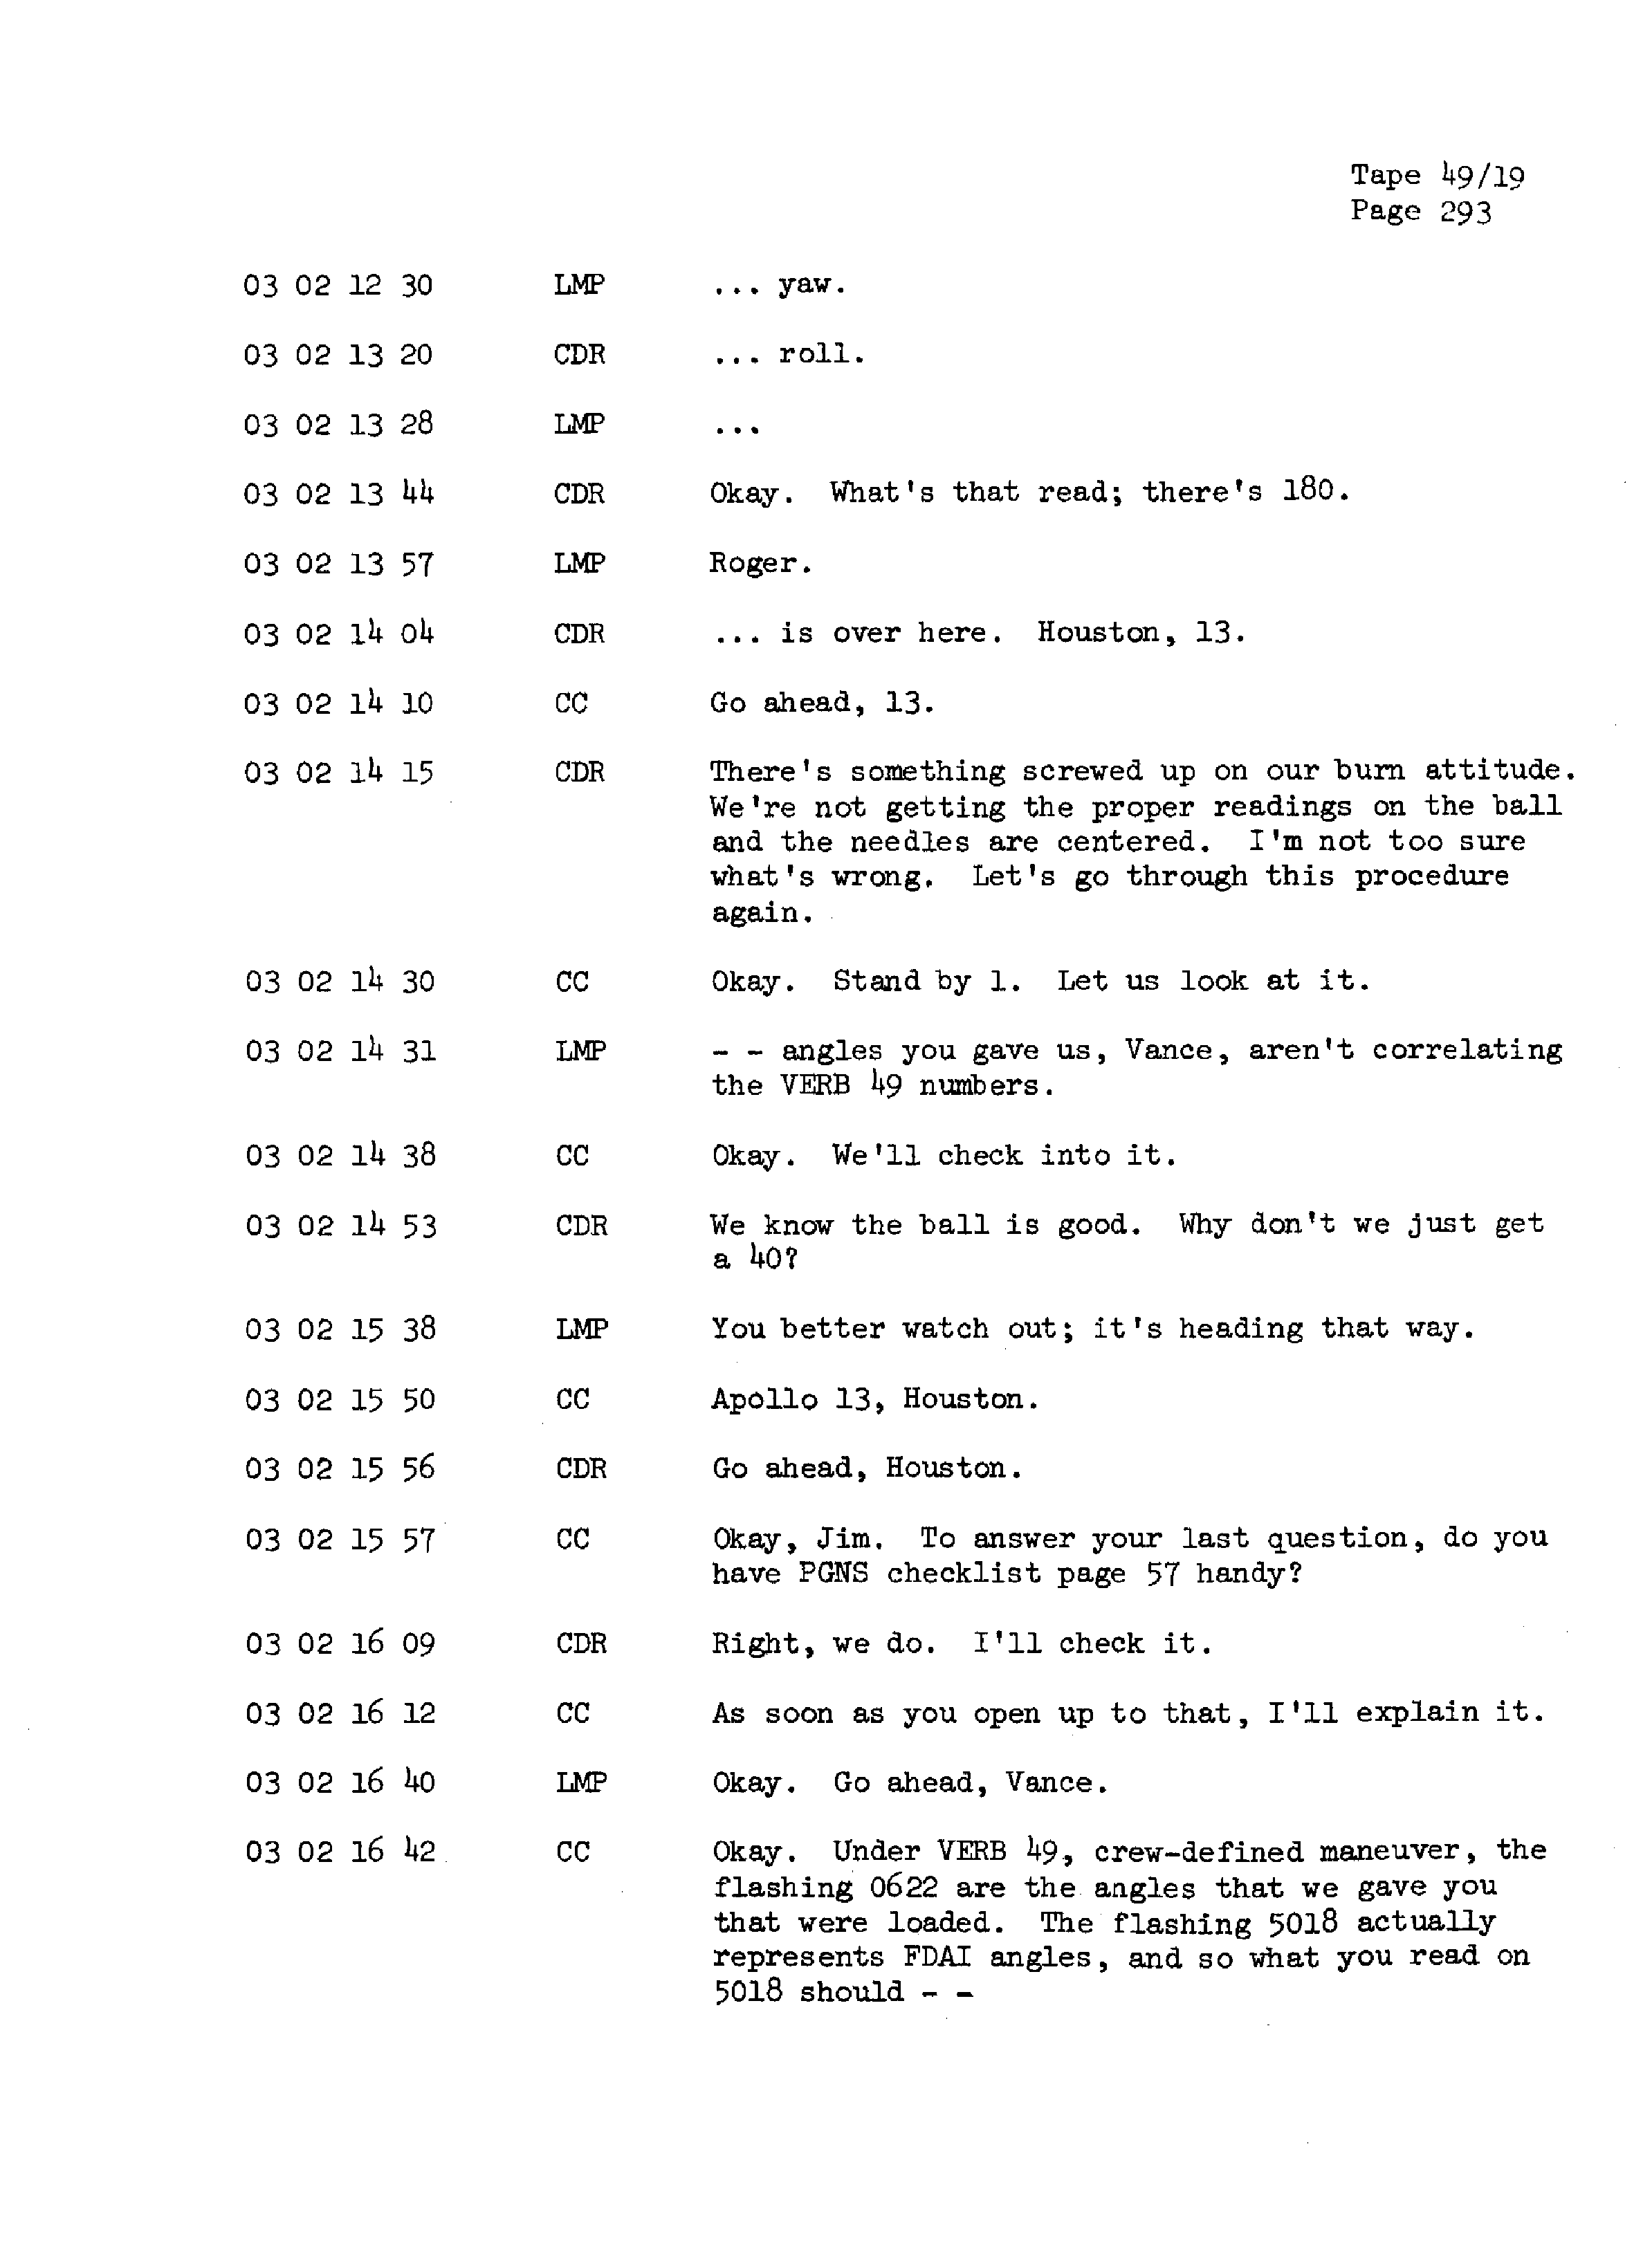 Page 300 of Apollo 13’s original transcript